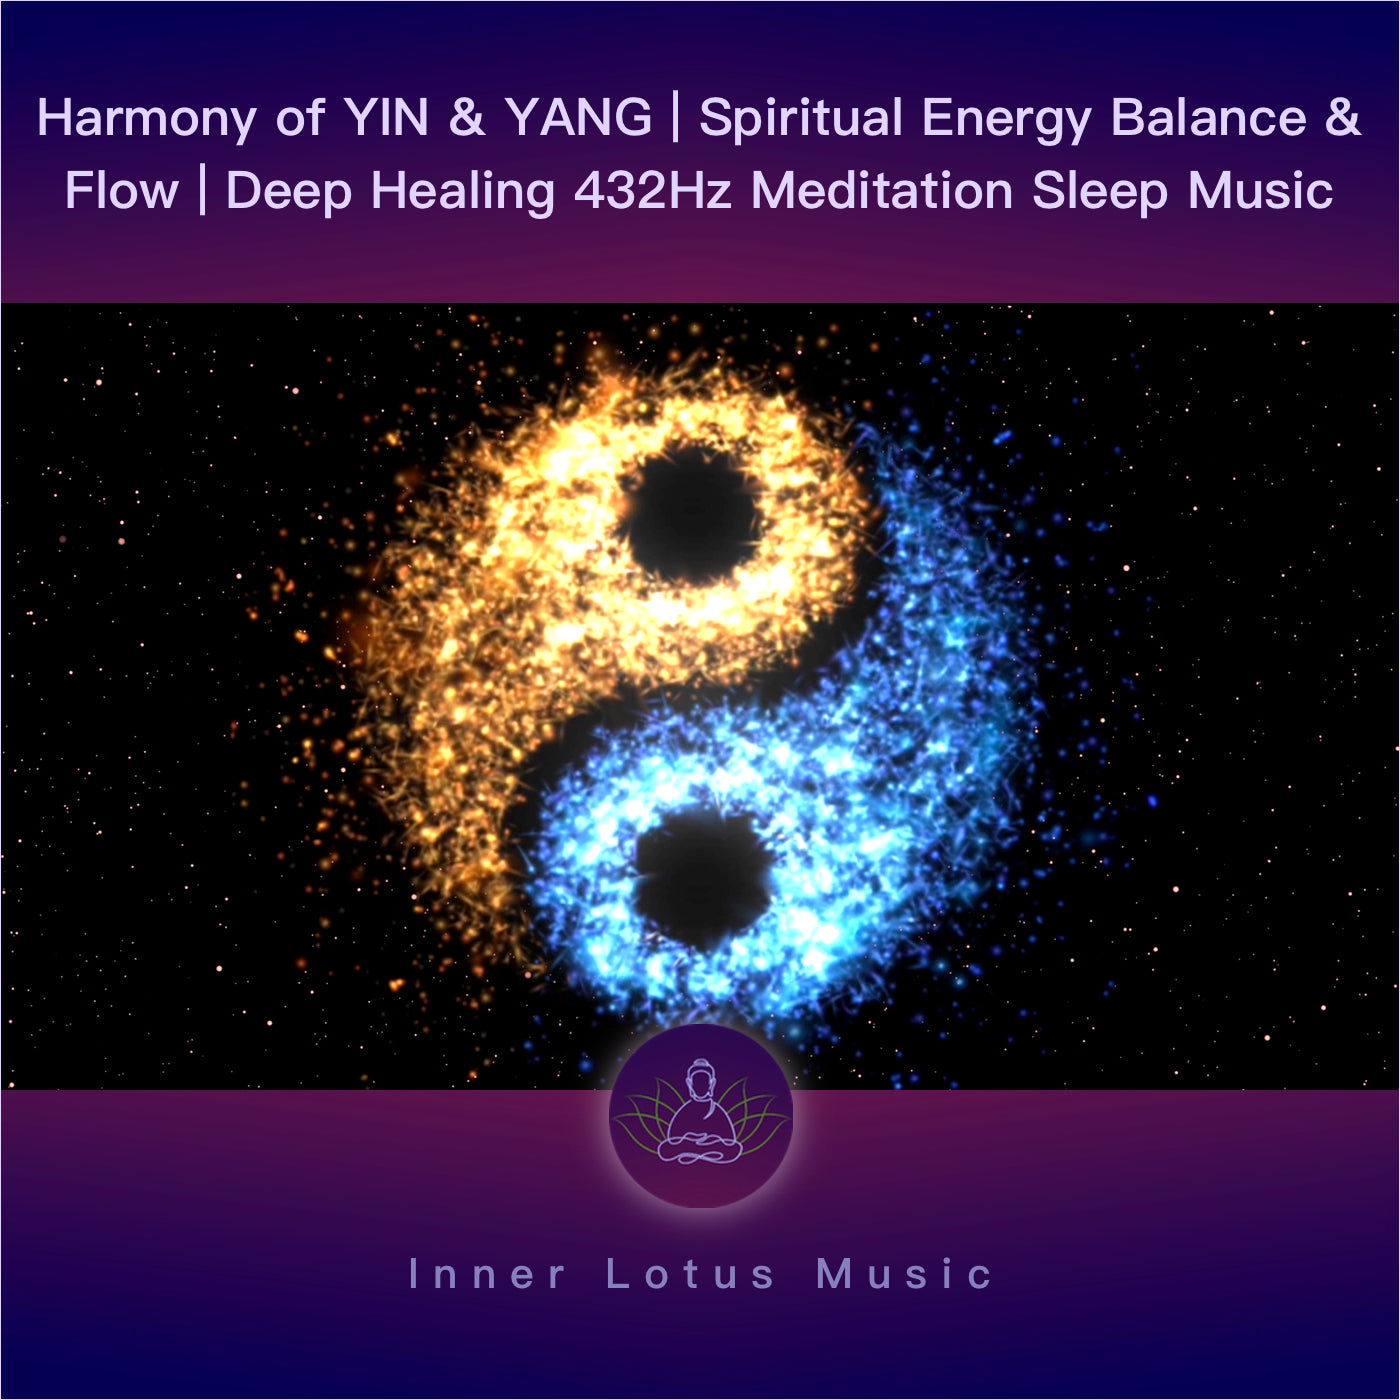 Harmonie von YIN & YANG | Spirituelle Energie, Ausgleich & Fluss | 432Hz Musik Meditation & Schlaf